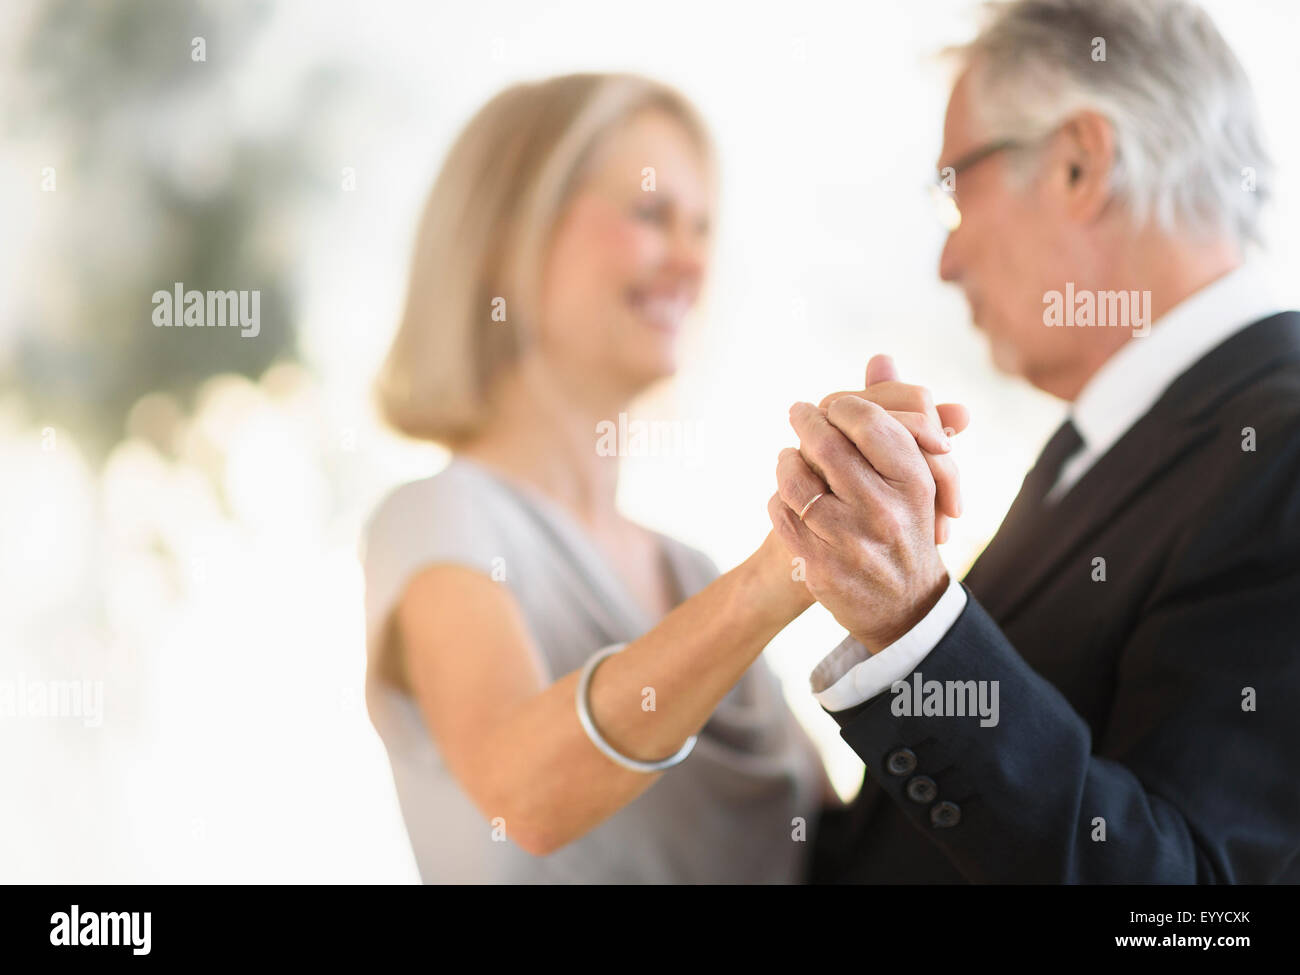 Smiling Caucasian couple dancing Banque D'Images